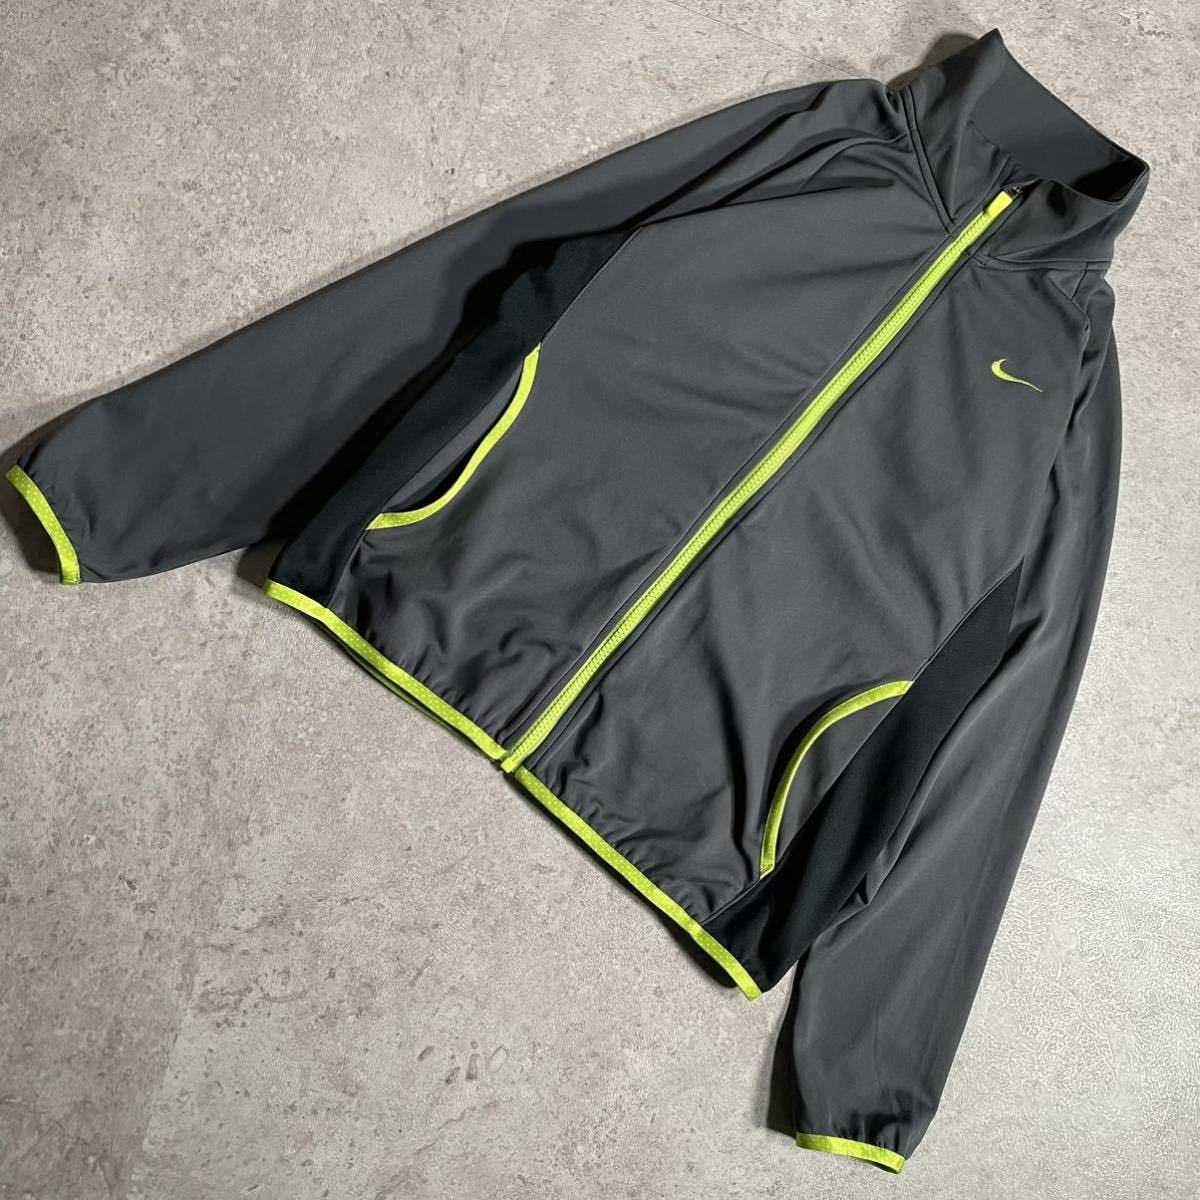 NIKE Nike jersey setup lady's gray fluorescence yellow Golf wear sport wear 